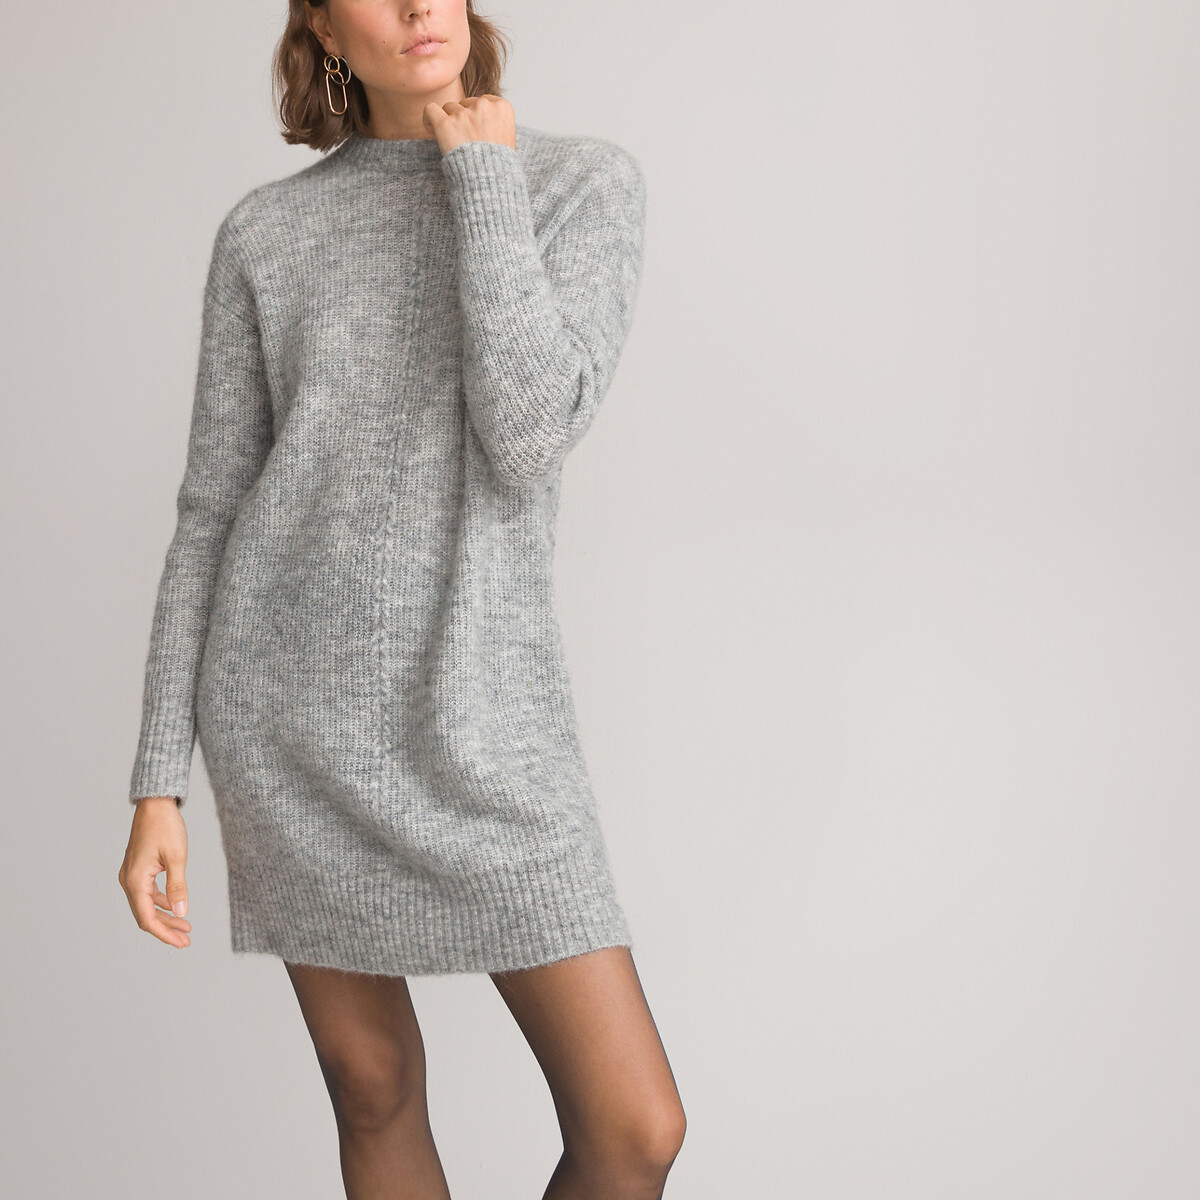 платье-пуловер короткое длинные рукава из смешанной шерсти l серый